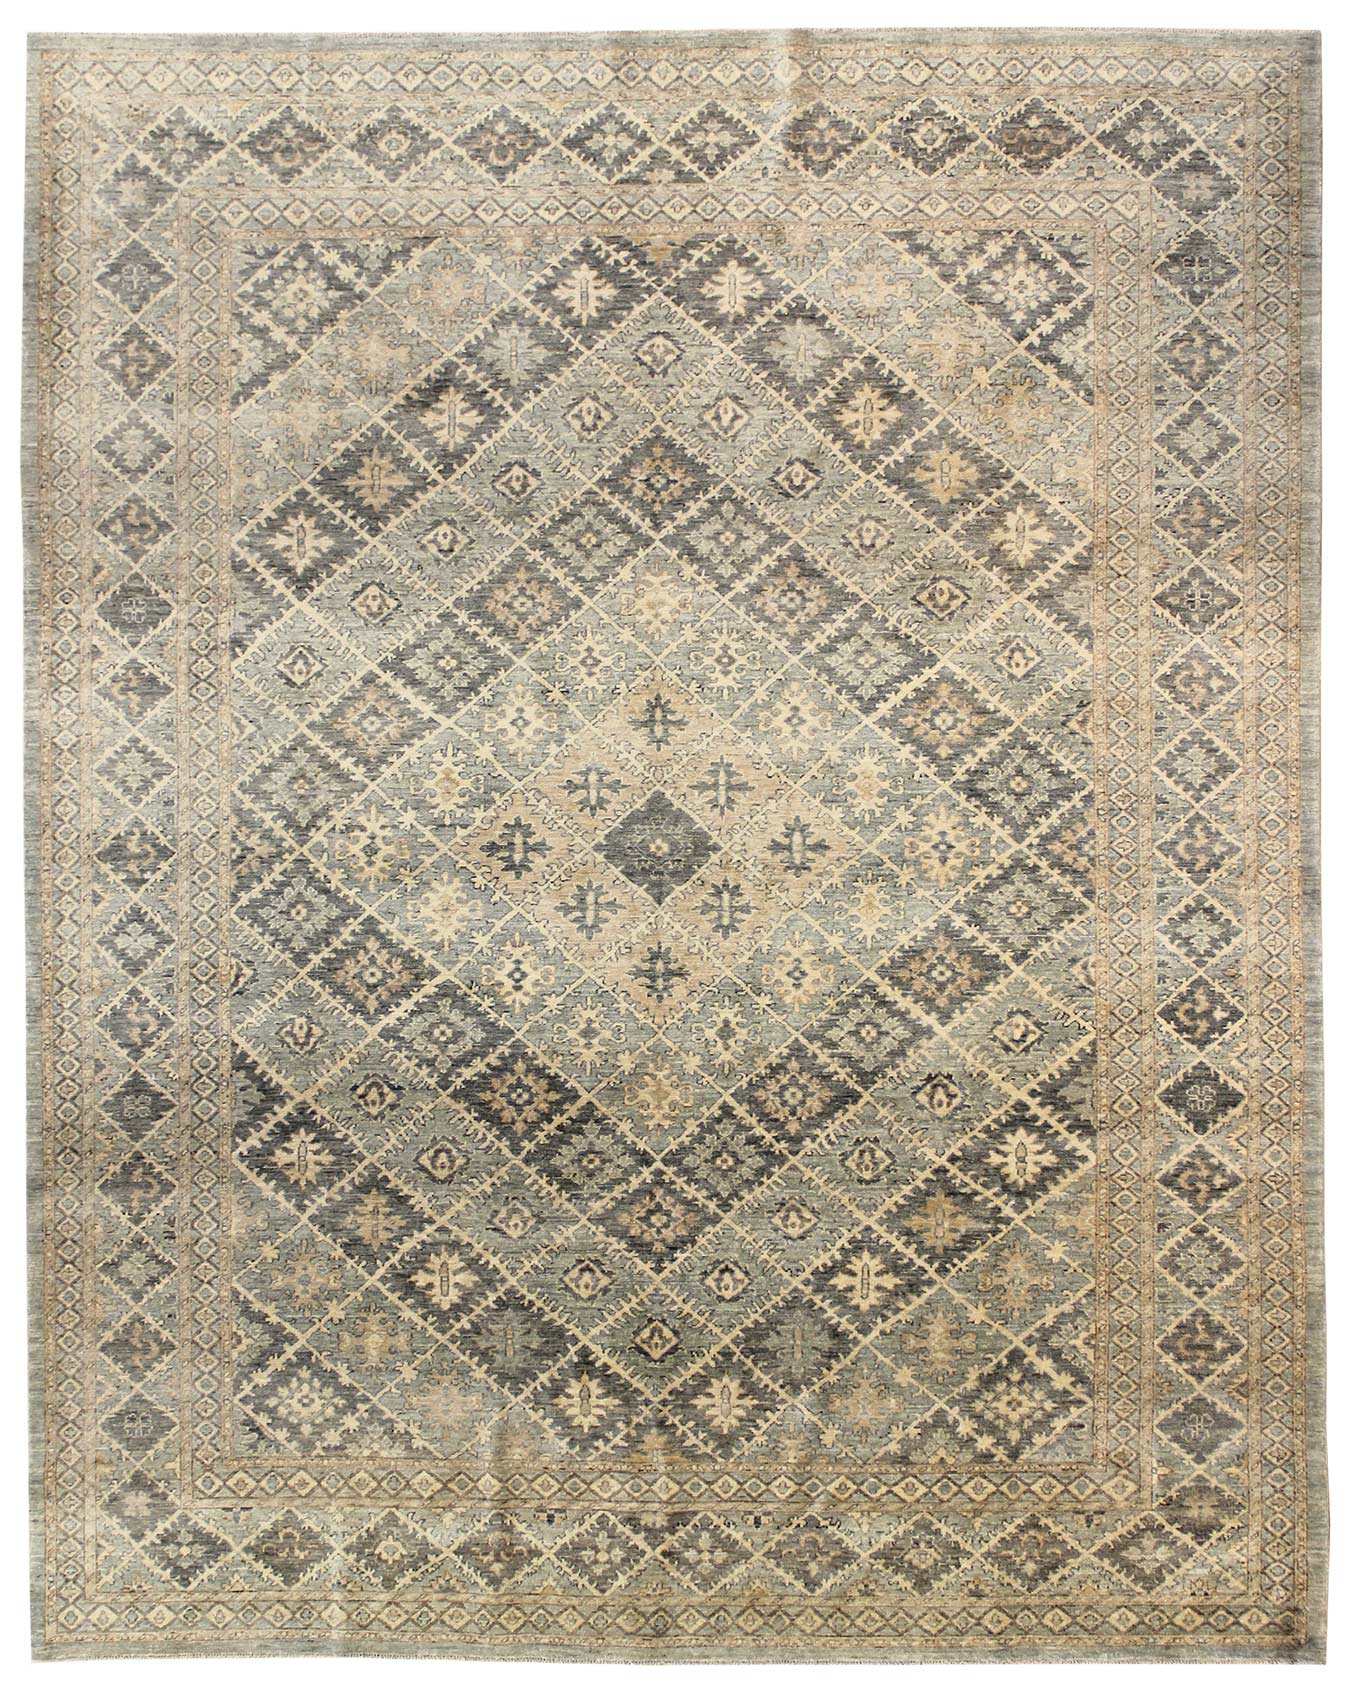 Panel Tabriz Handwoven Traditional Rug